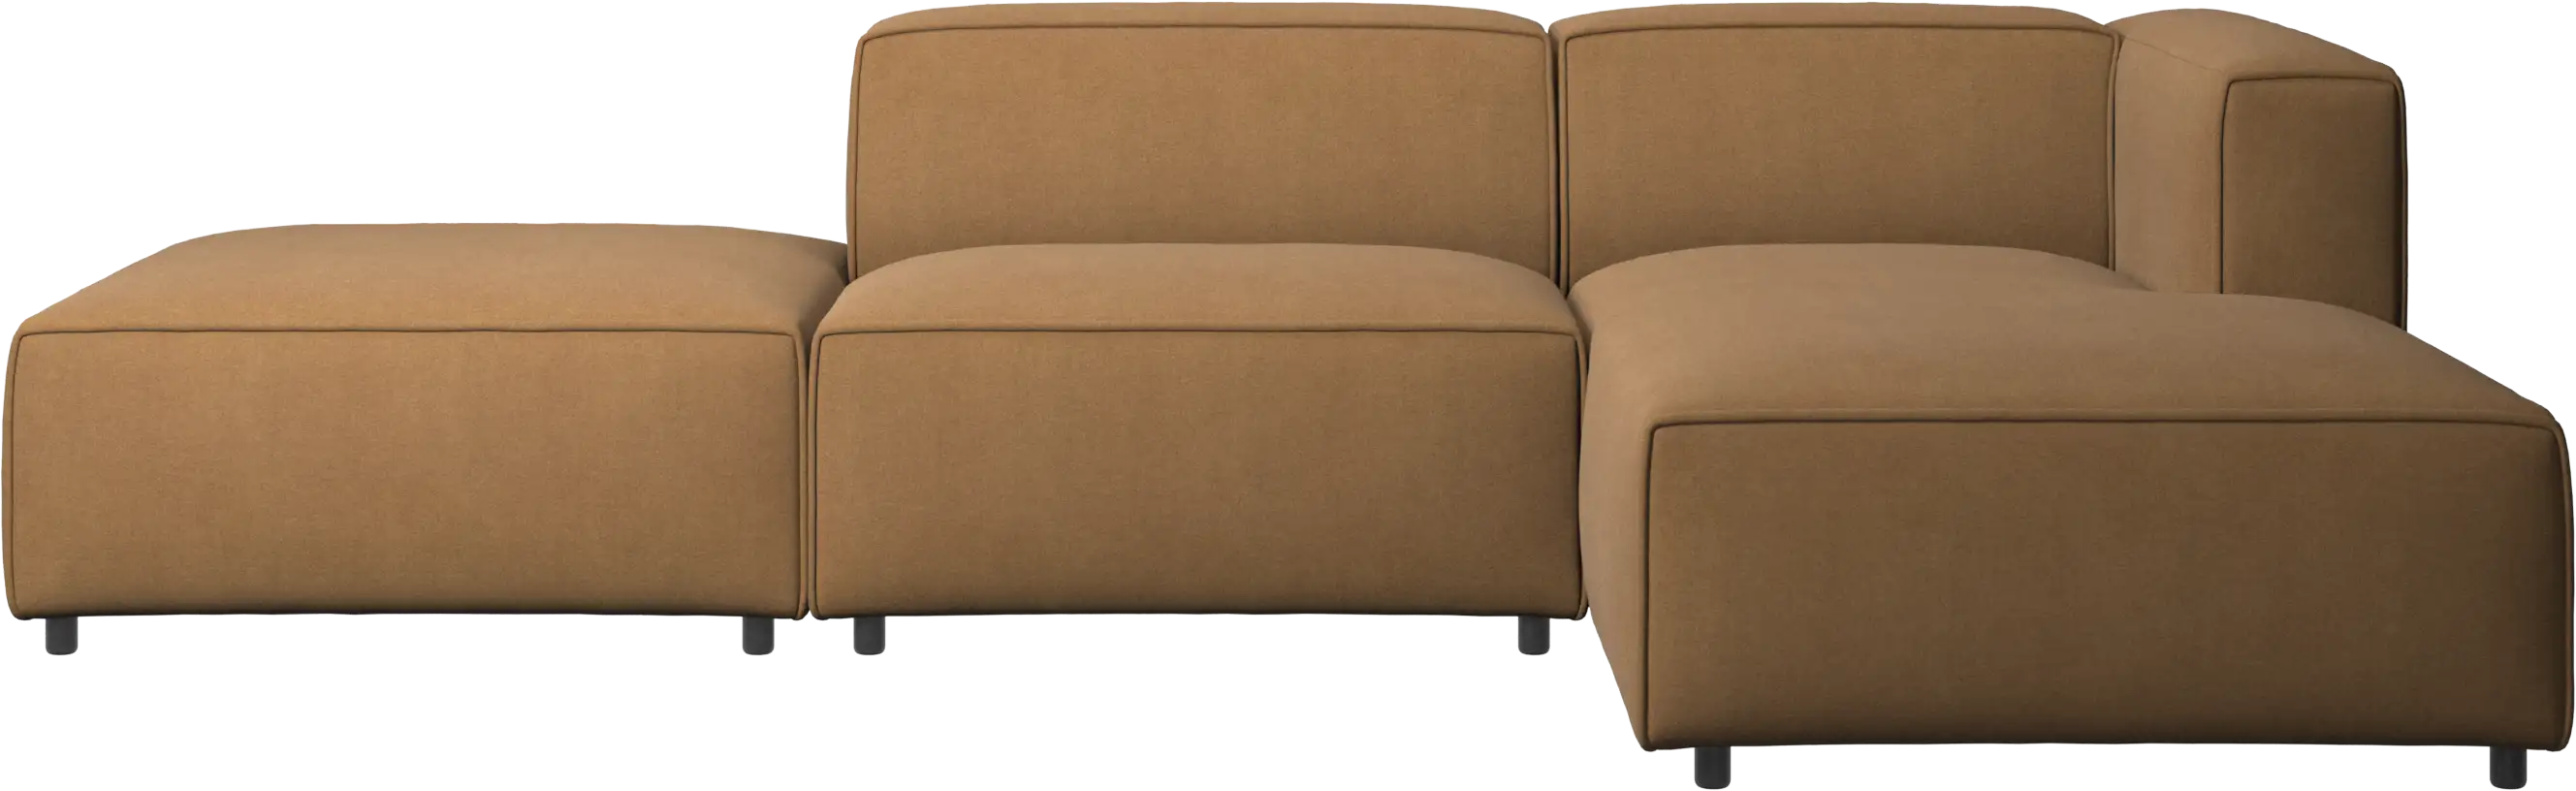 Carmo sofa med hvilemodul